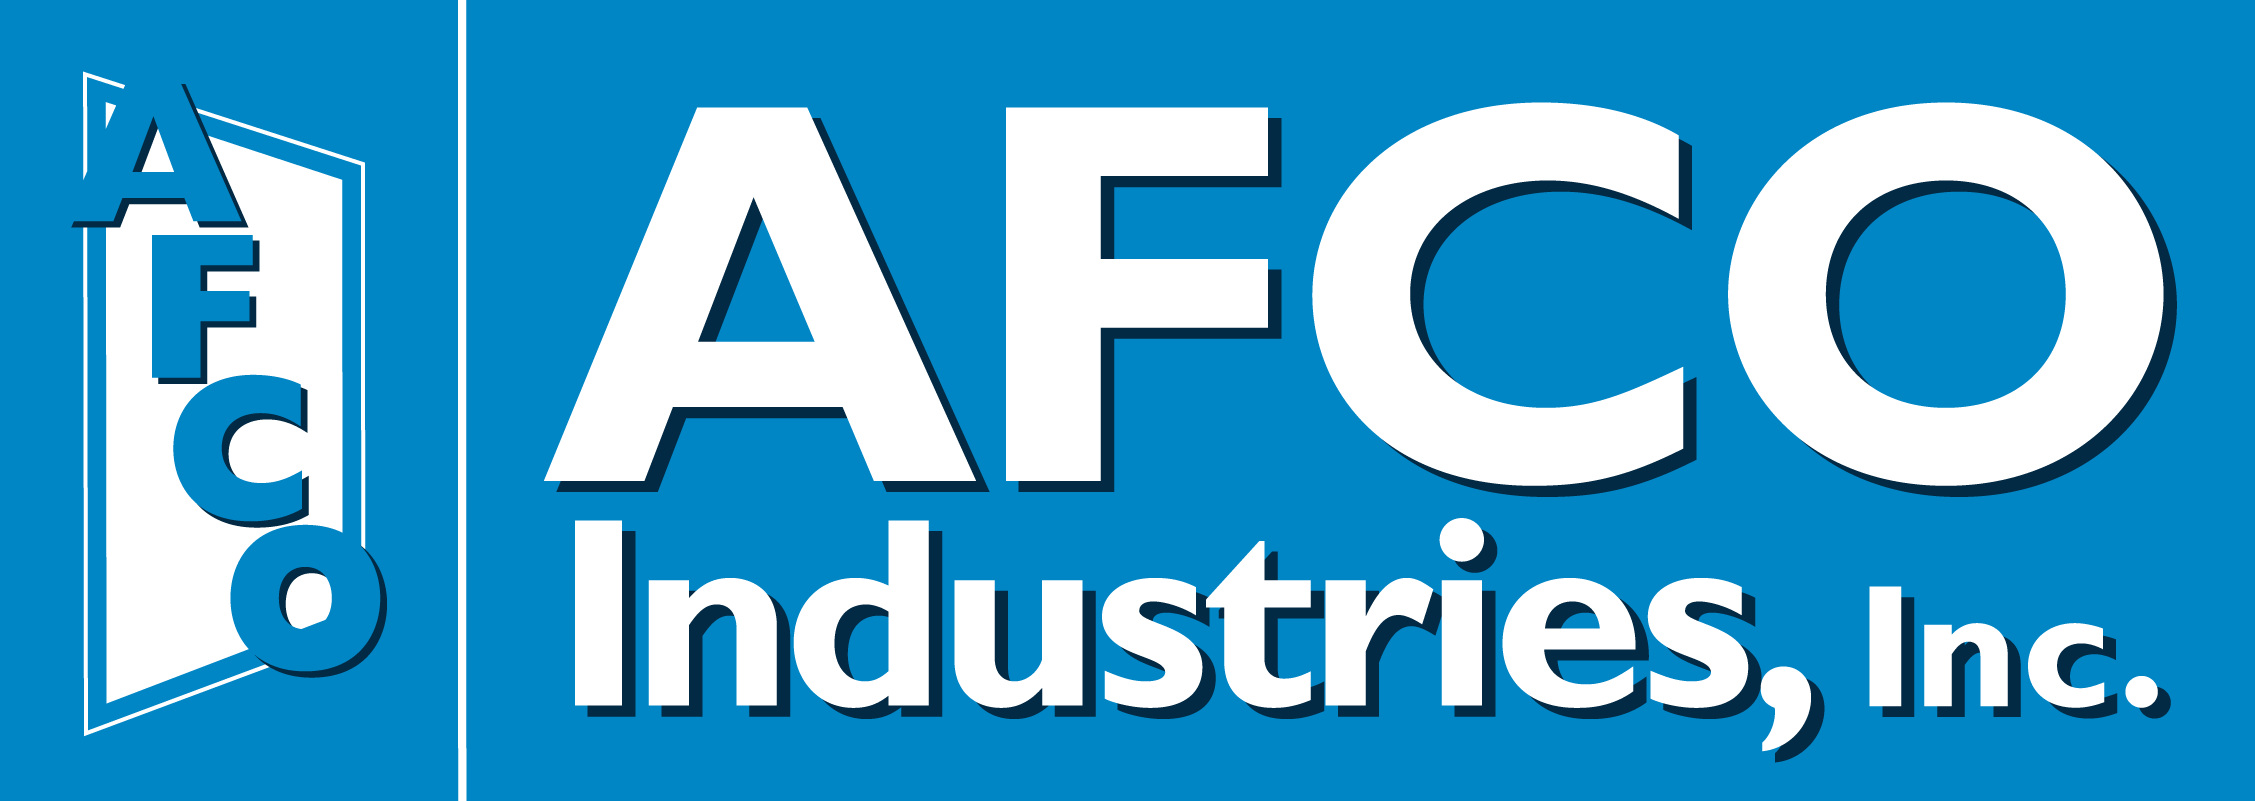 https://fame-usa.com/wp-content/uploads/2020/11/AFCO-IND-logo.png